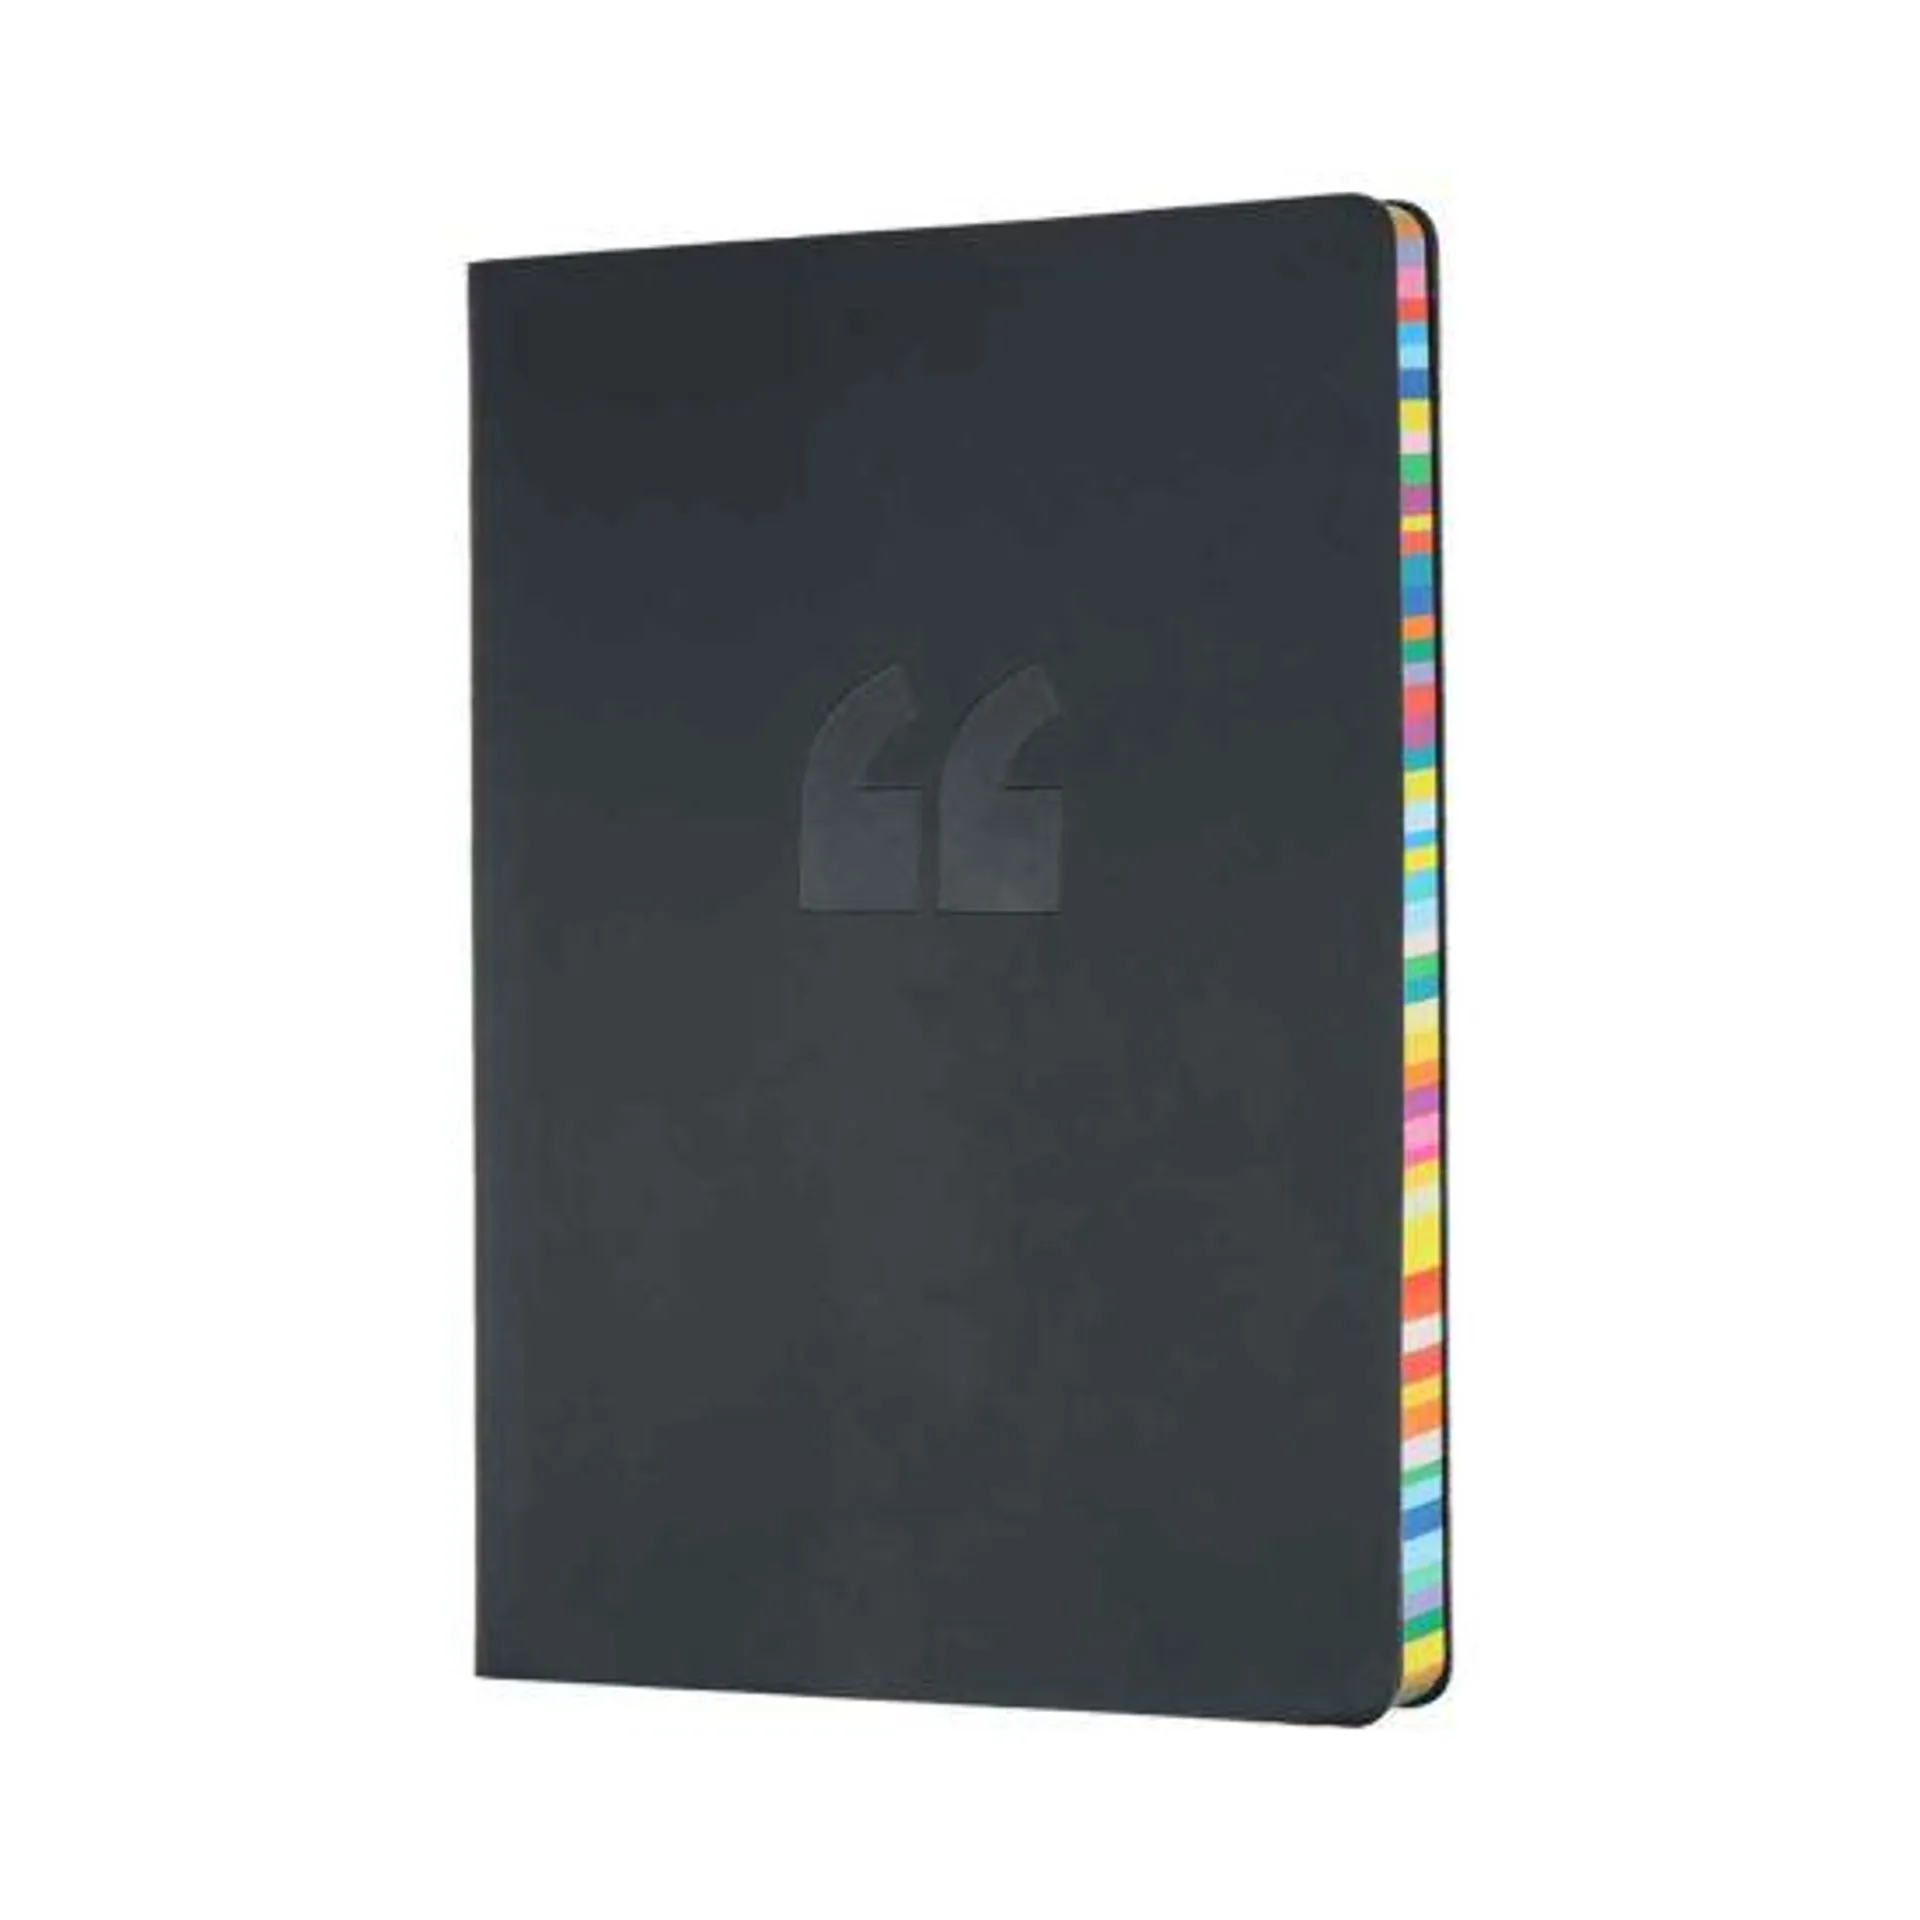 Rainbow edge A5 notebook